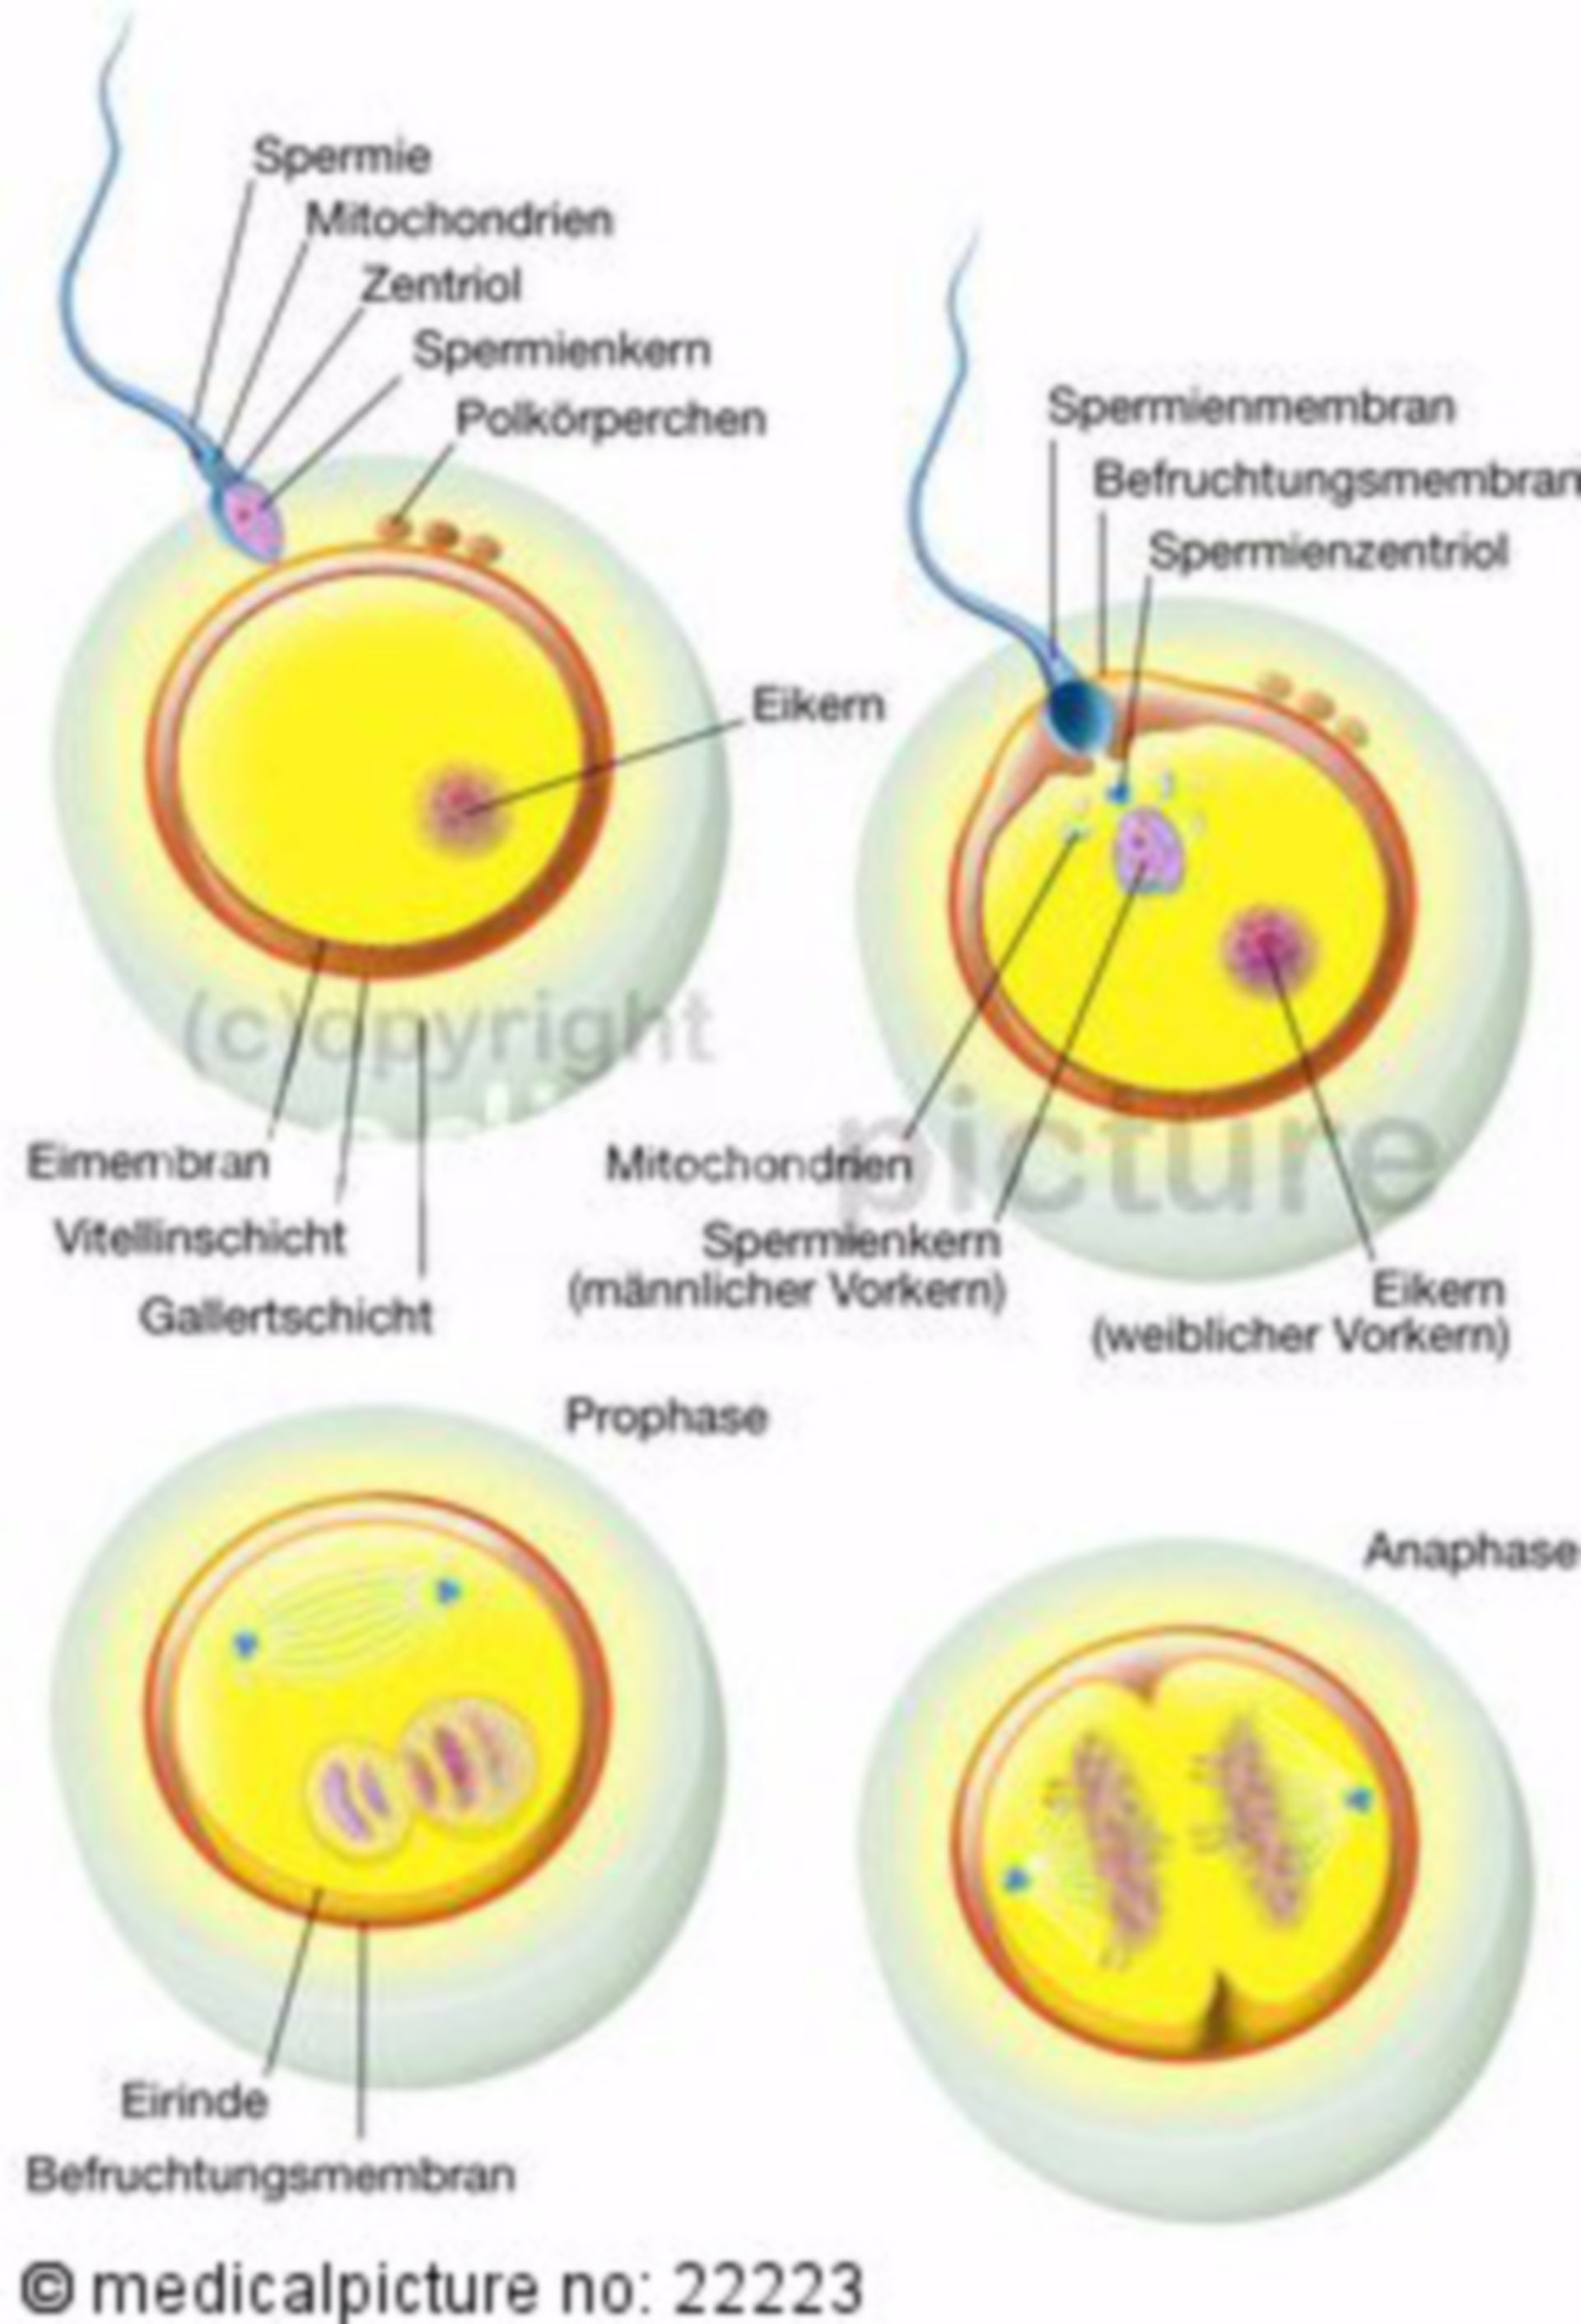 Fertilization of a Human Egg Cell by a Sperm